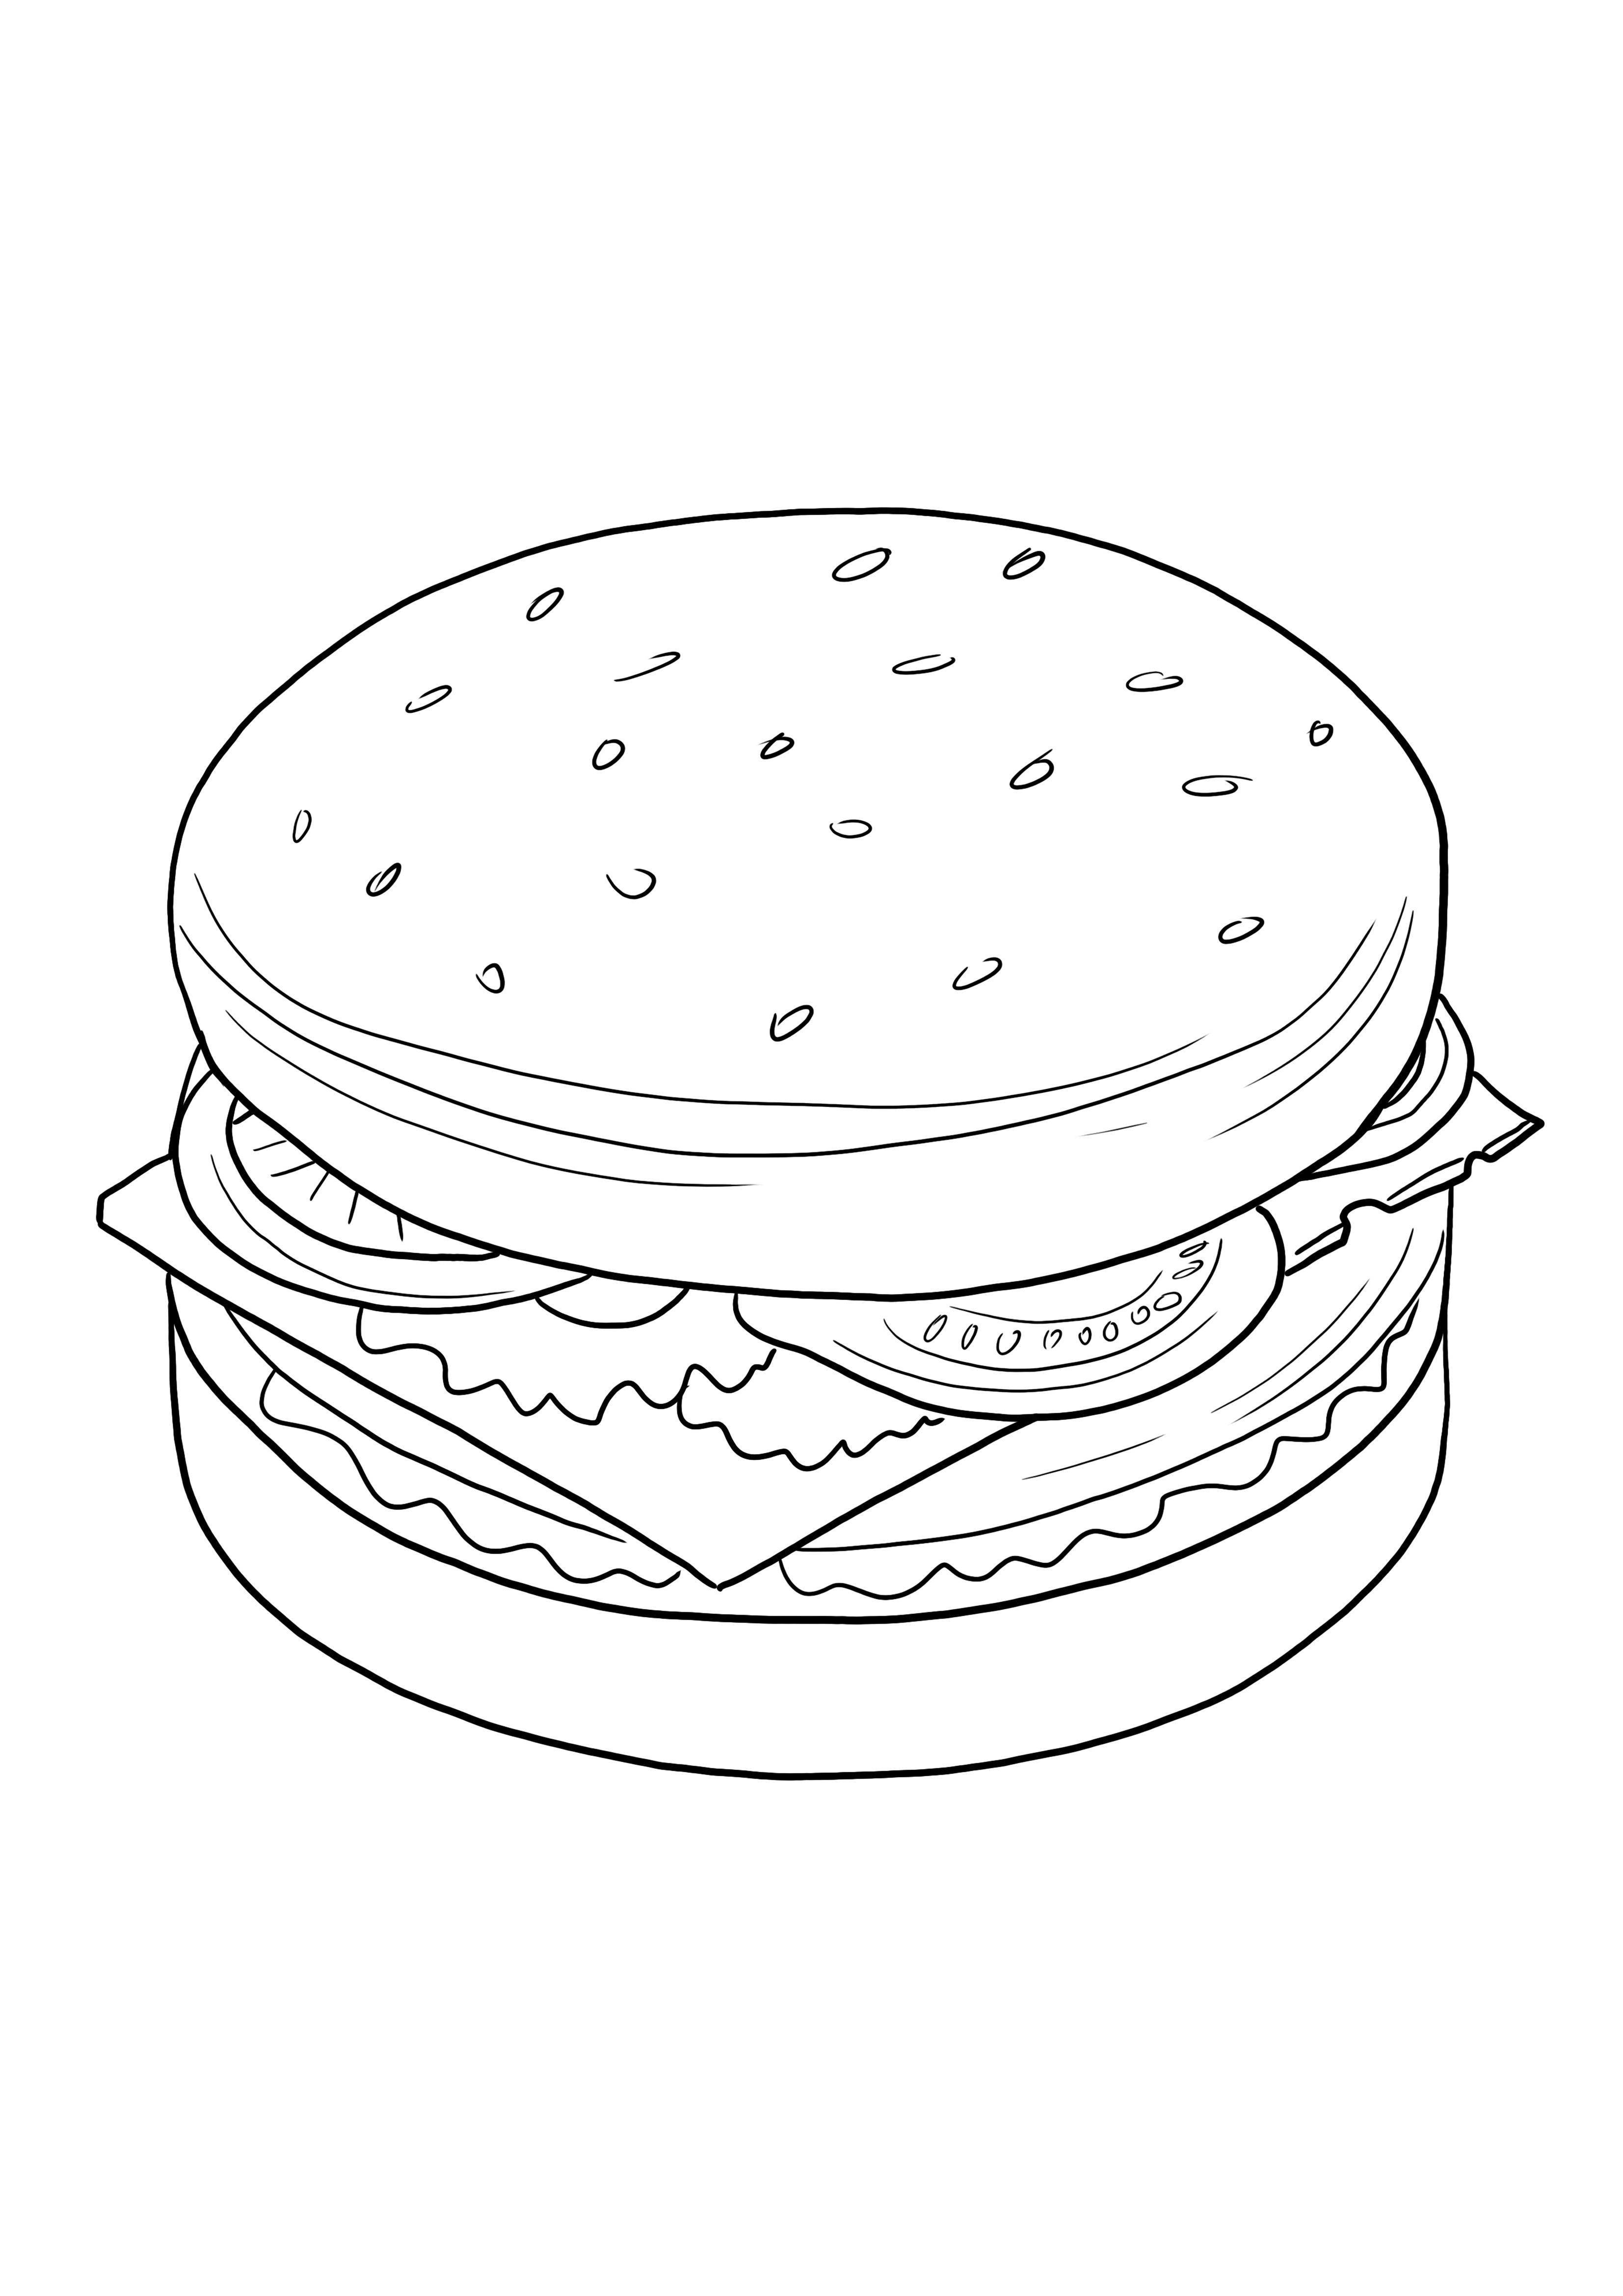 Cheeseburger grátis para imprimir e colorir para crianças de todas as idades